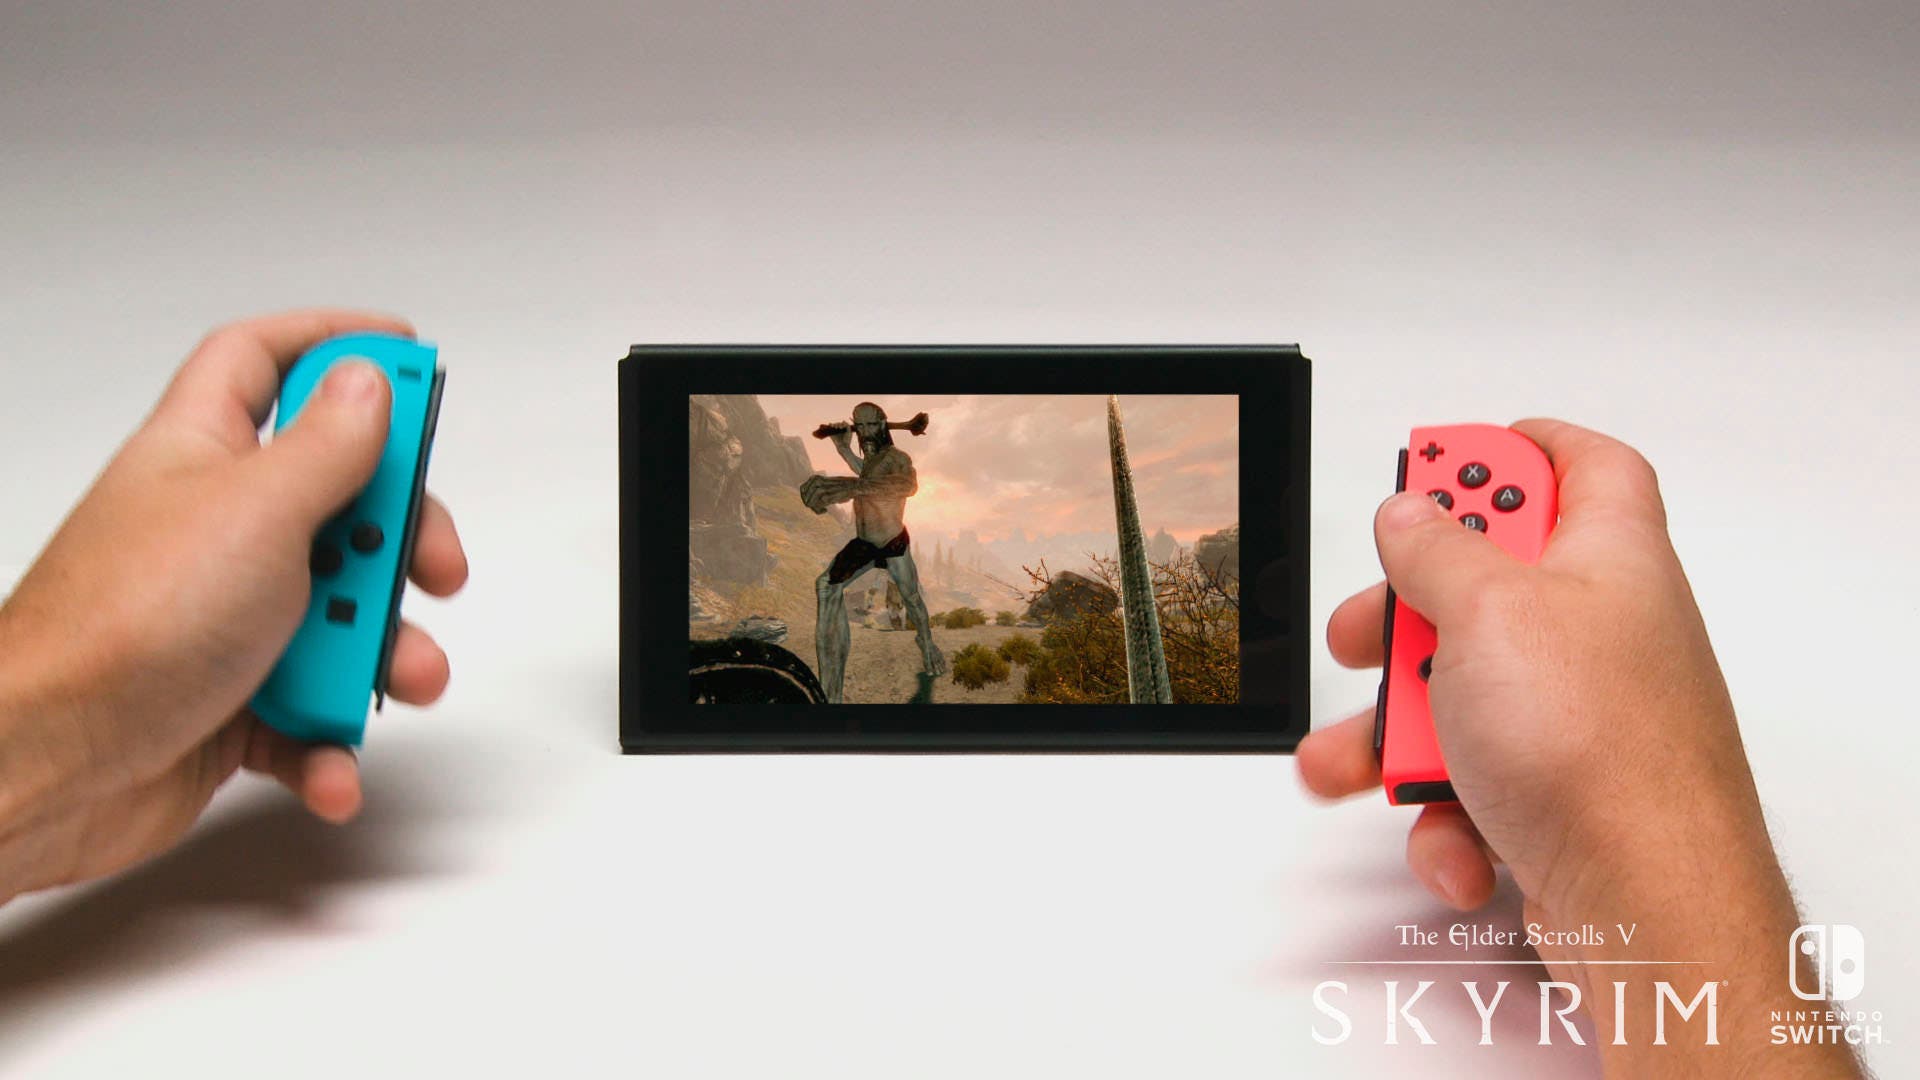 Skyrim se actualiza a la versión 1.1 en Nintendo Switch